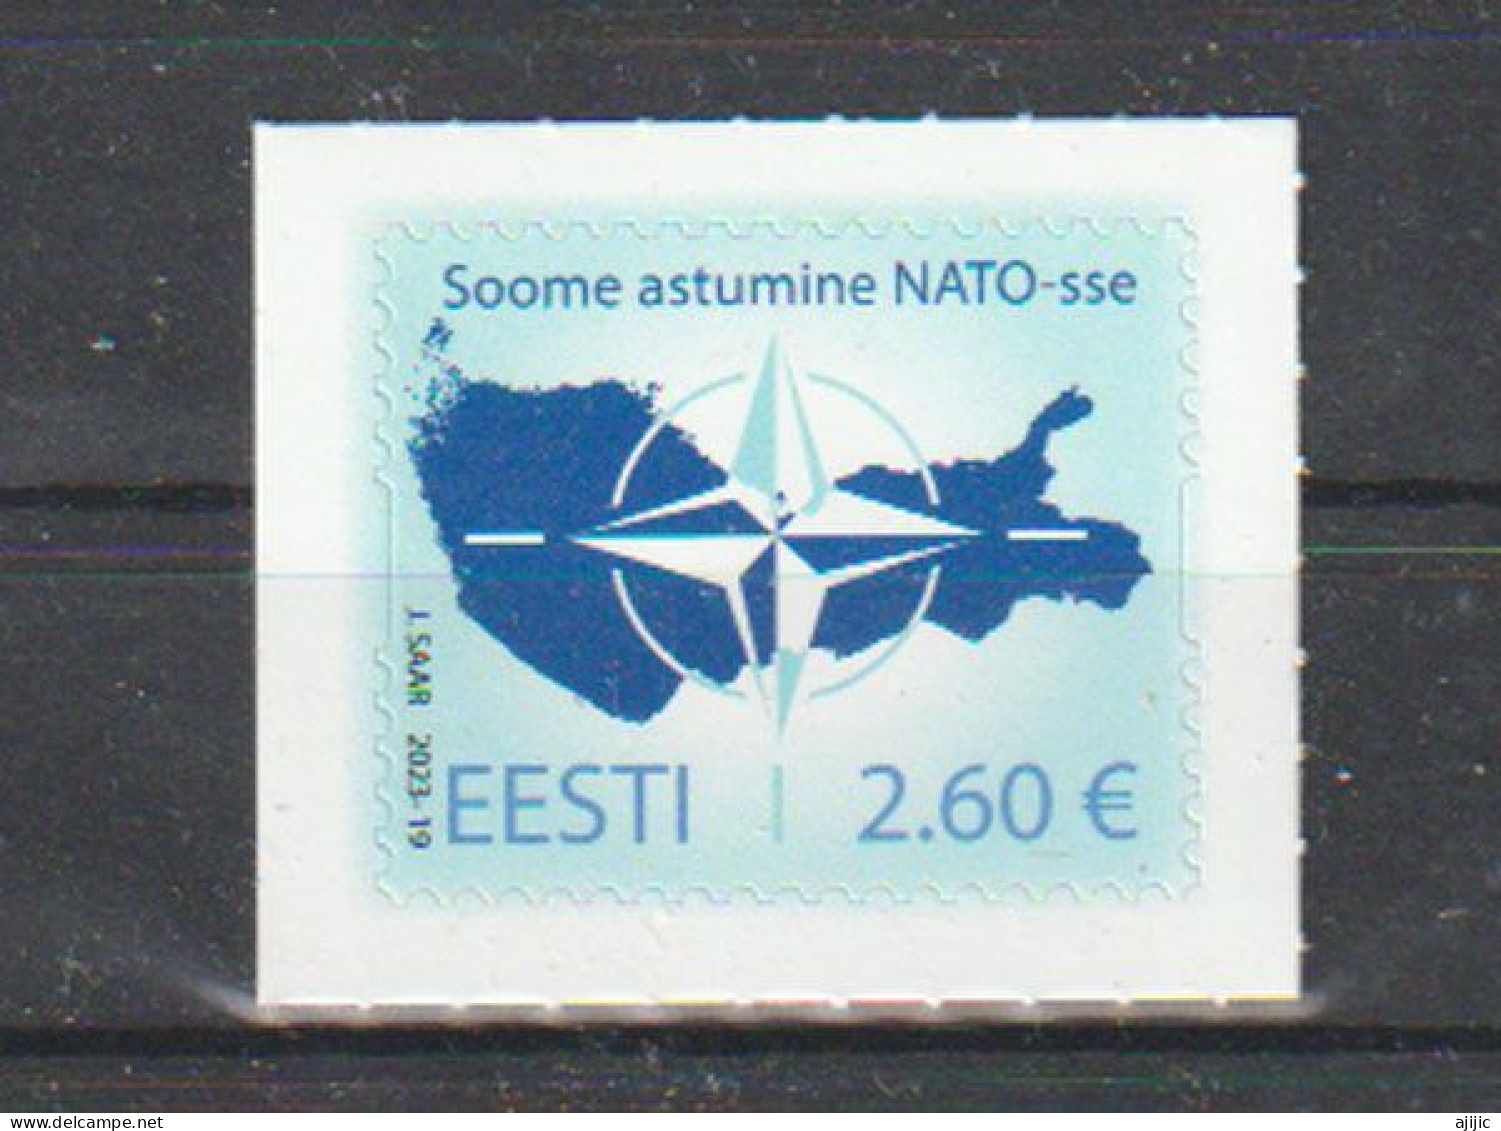 2023.Adhésion De La Finlande à L'OTAN. Timbre Neuf ** Adhésif Haute Faciale D'Estonie - Neufs